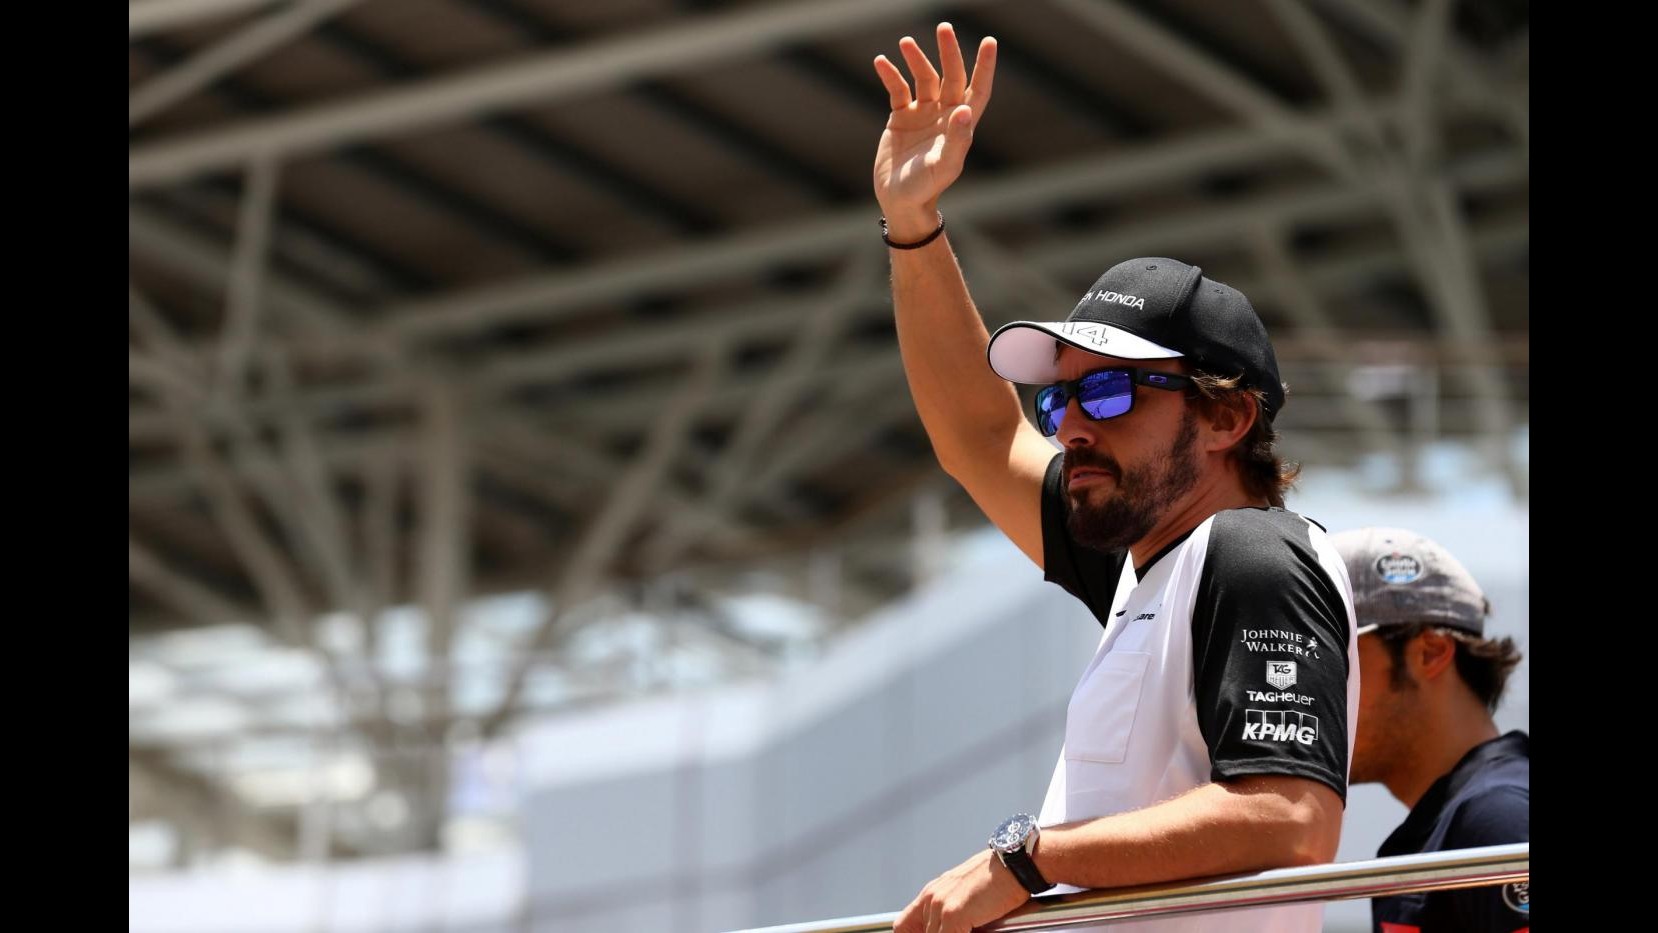 F1, stampa tedesca: perdita memoria Alonso dovuta a troppi sedativi